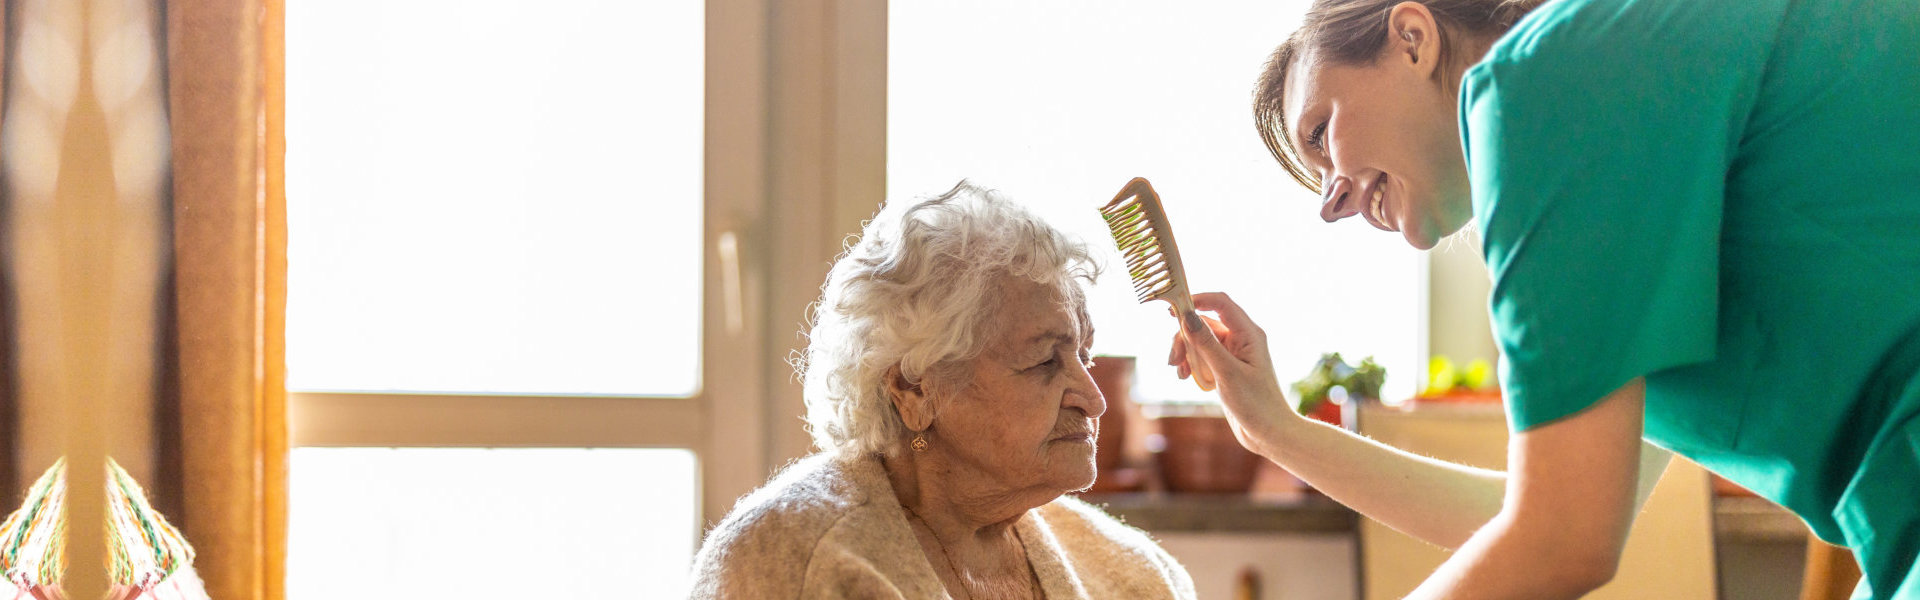 nurse combing the hair of senior woman